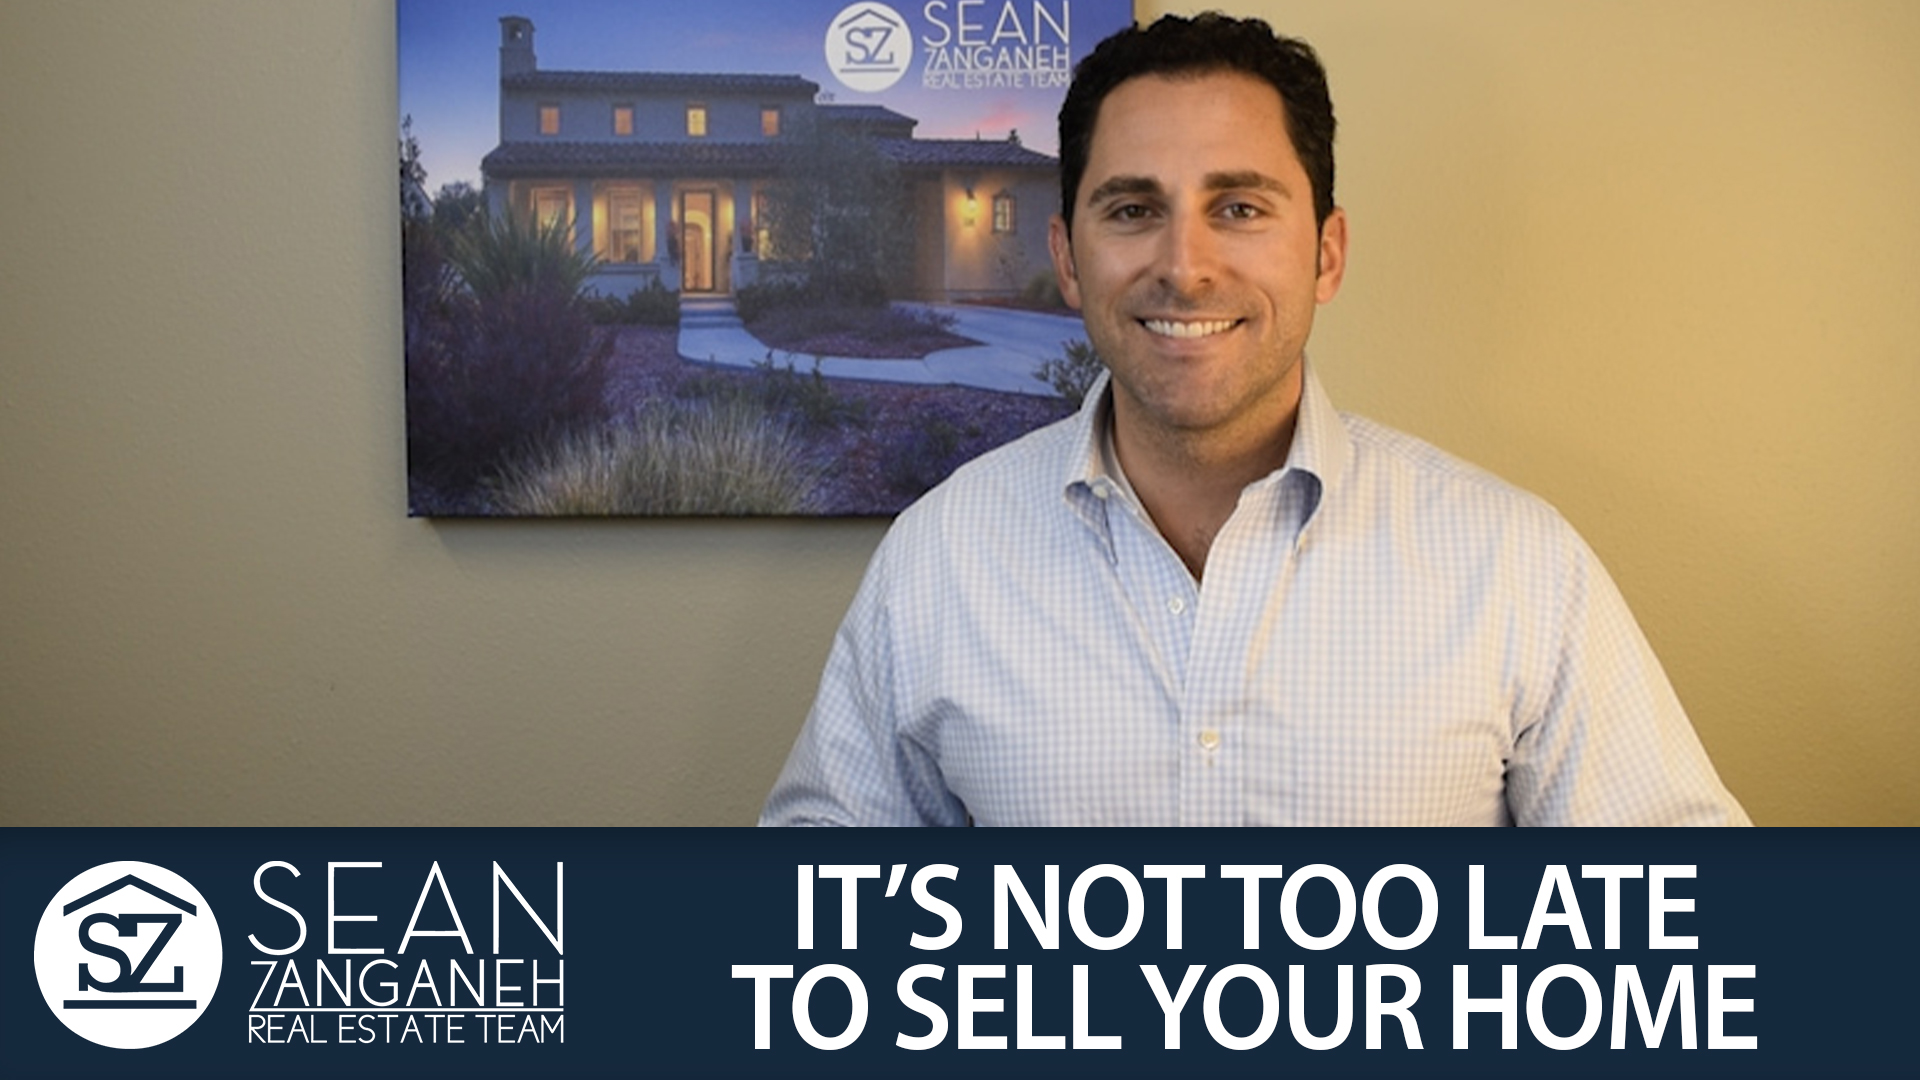 Sean Zanganeh Real Estate Video Blog